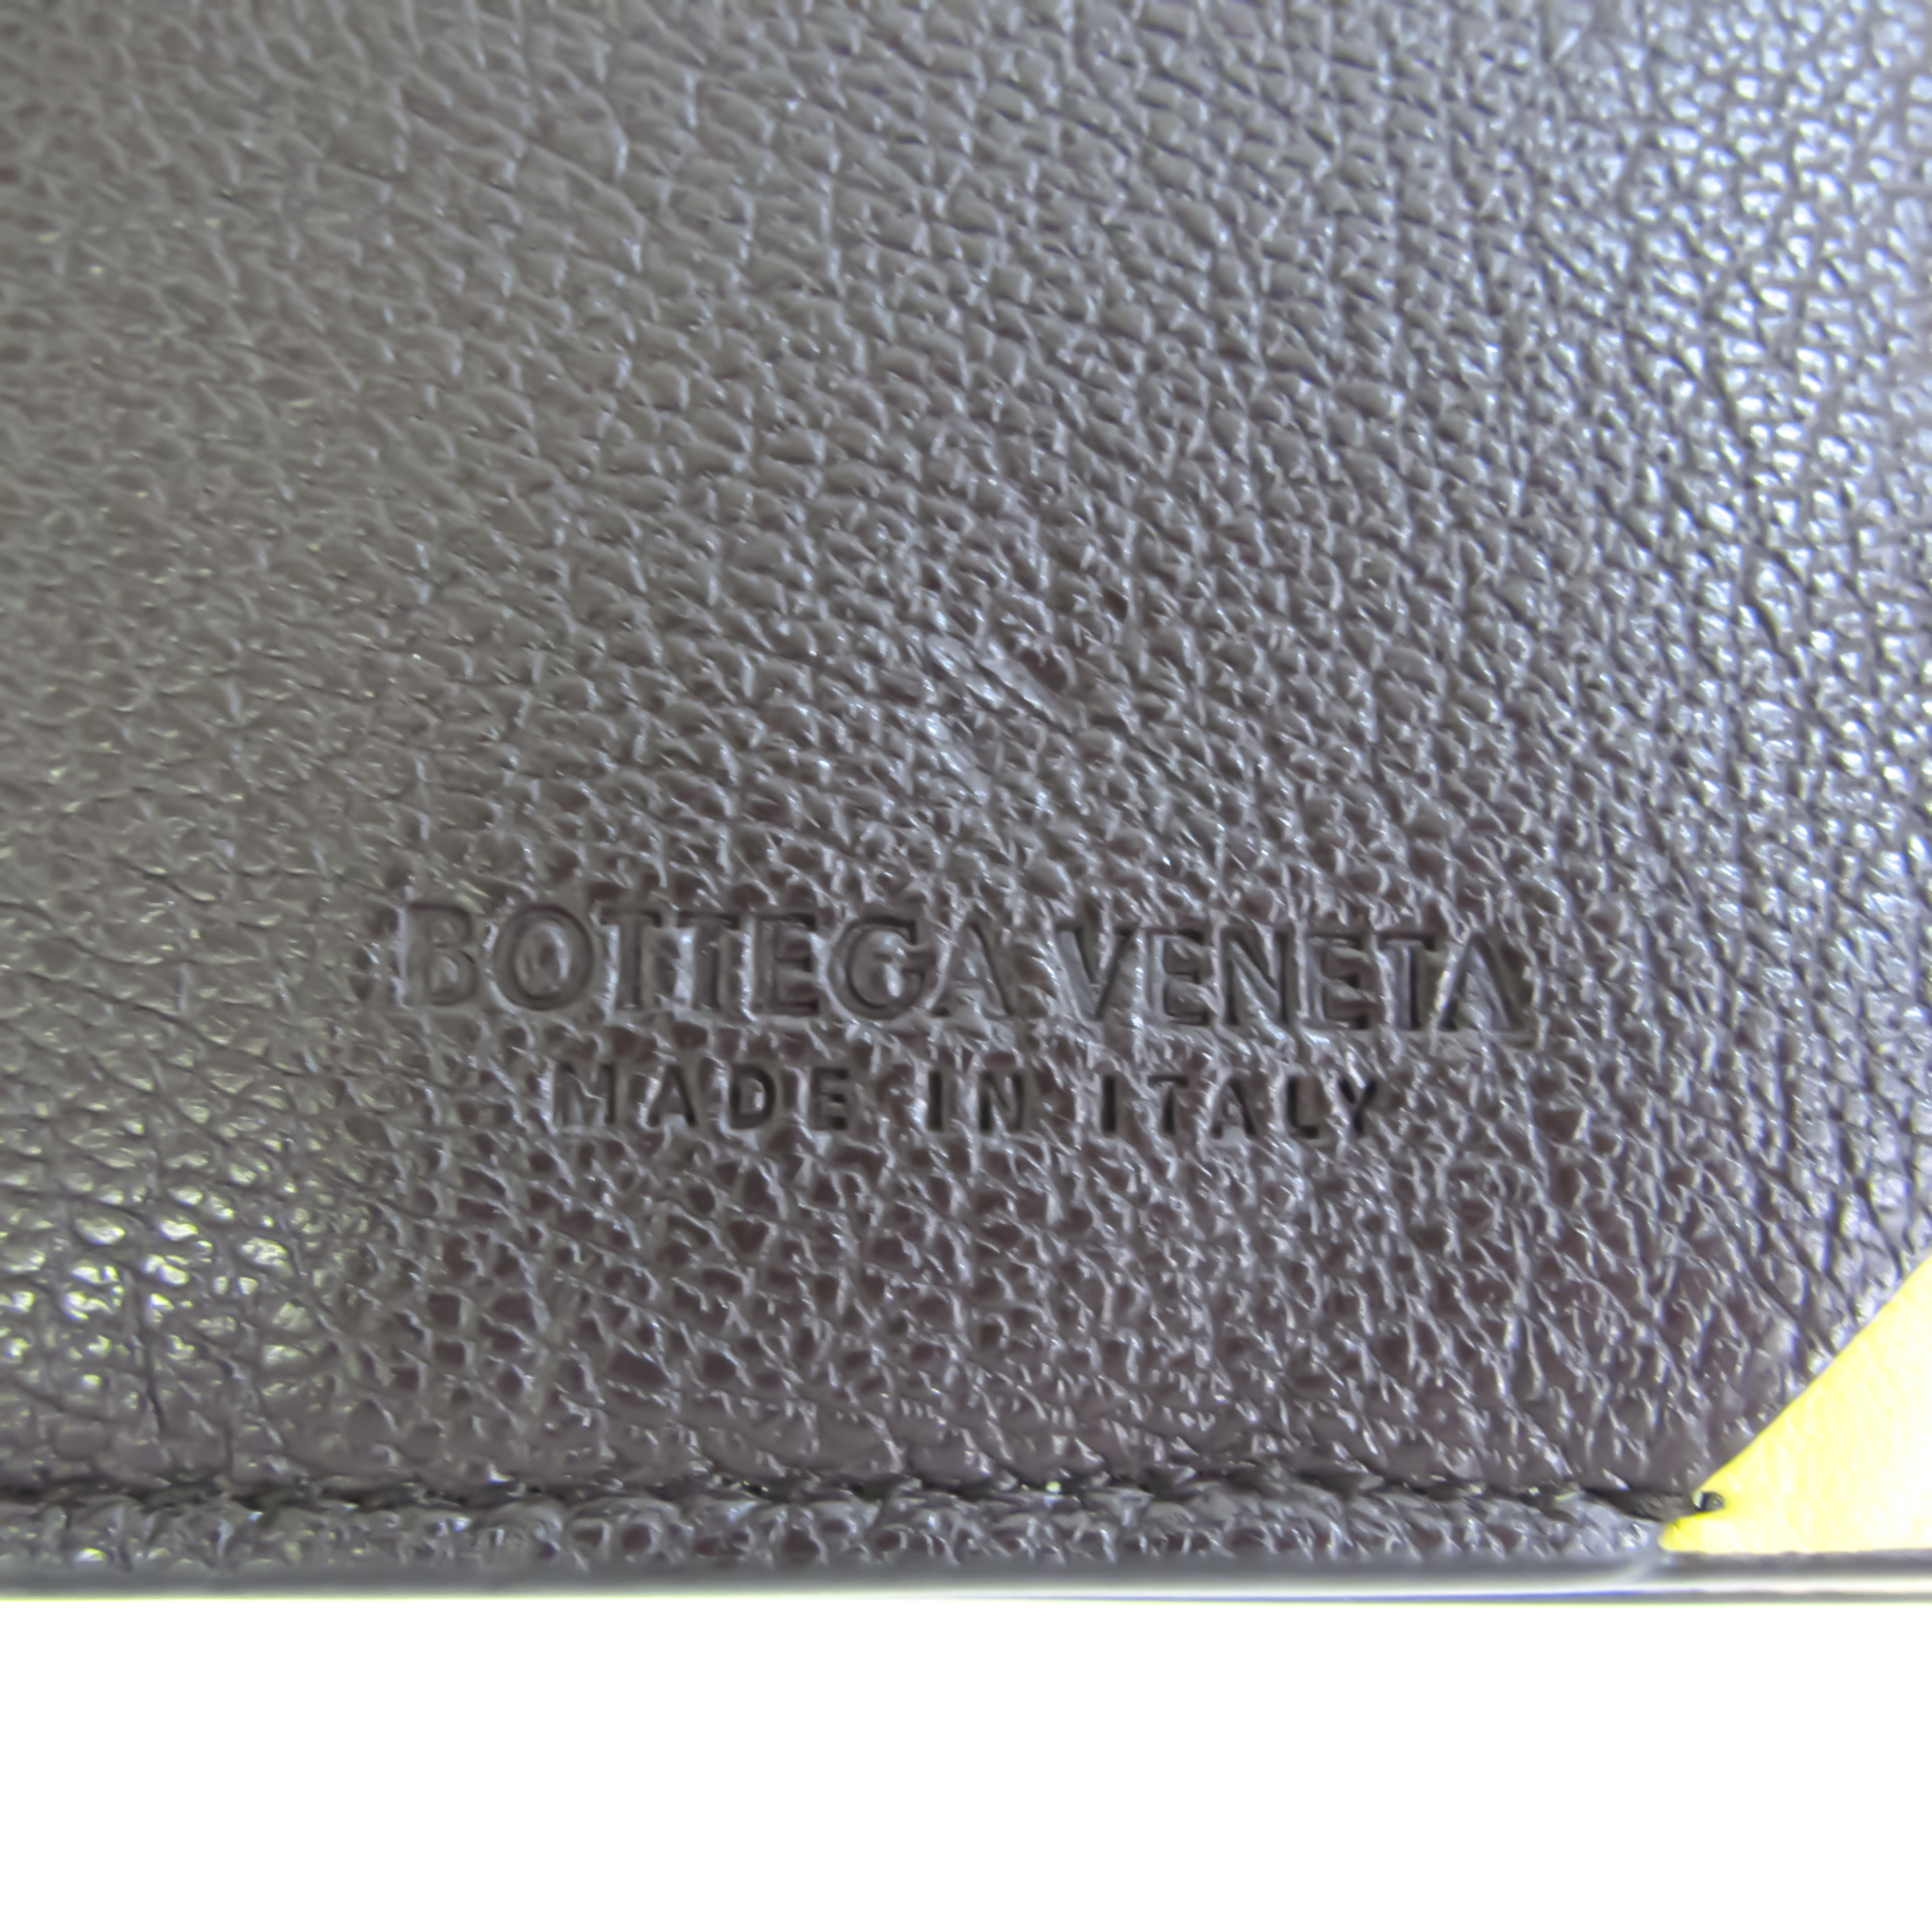 ボッテガ・ヴェネタ(Bottega Veneta) 629685 ユニセックス レザー 財布（三つ折り） ブラウン,イエロー